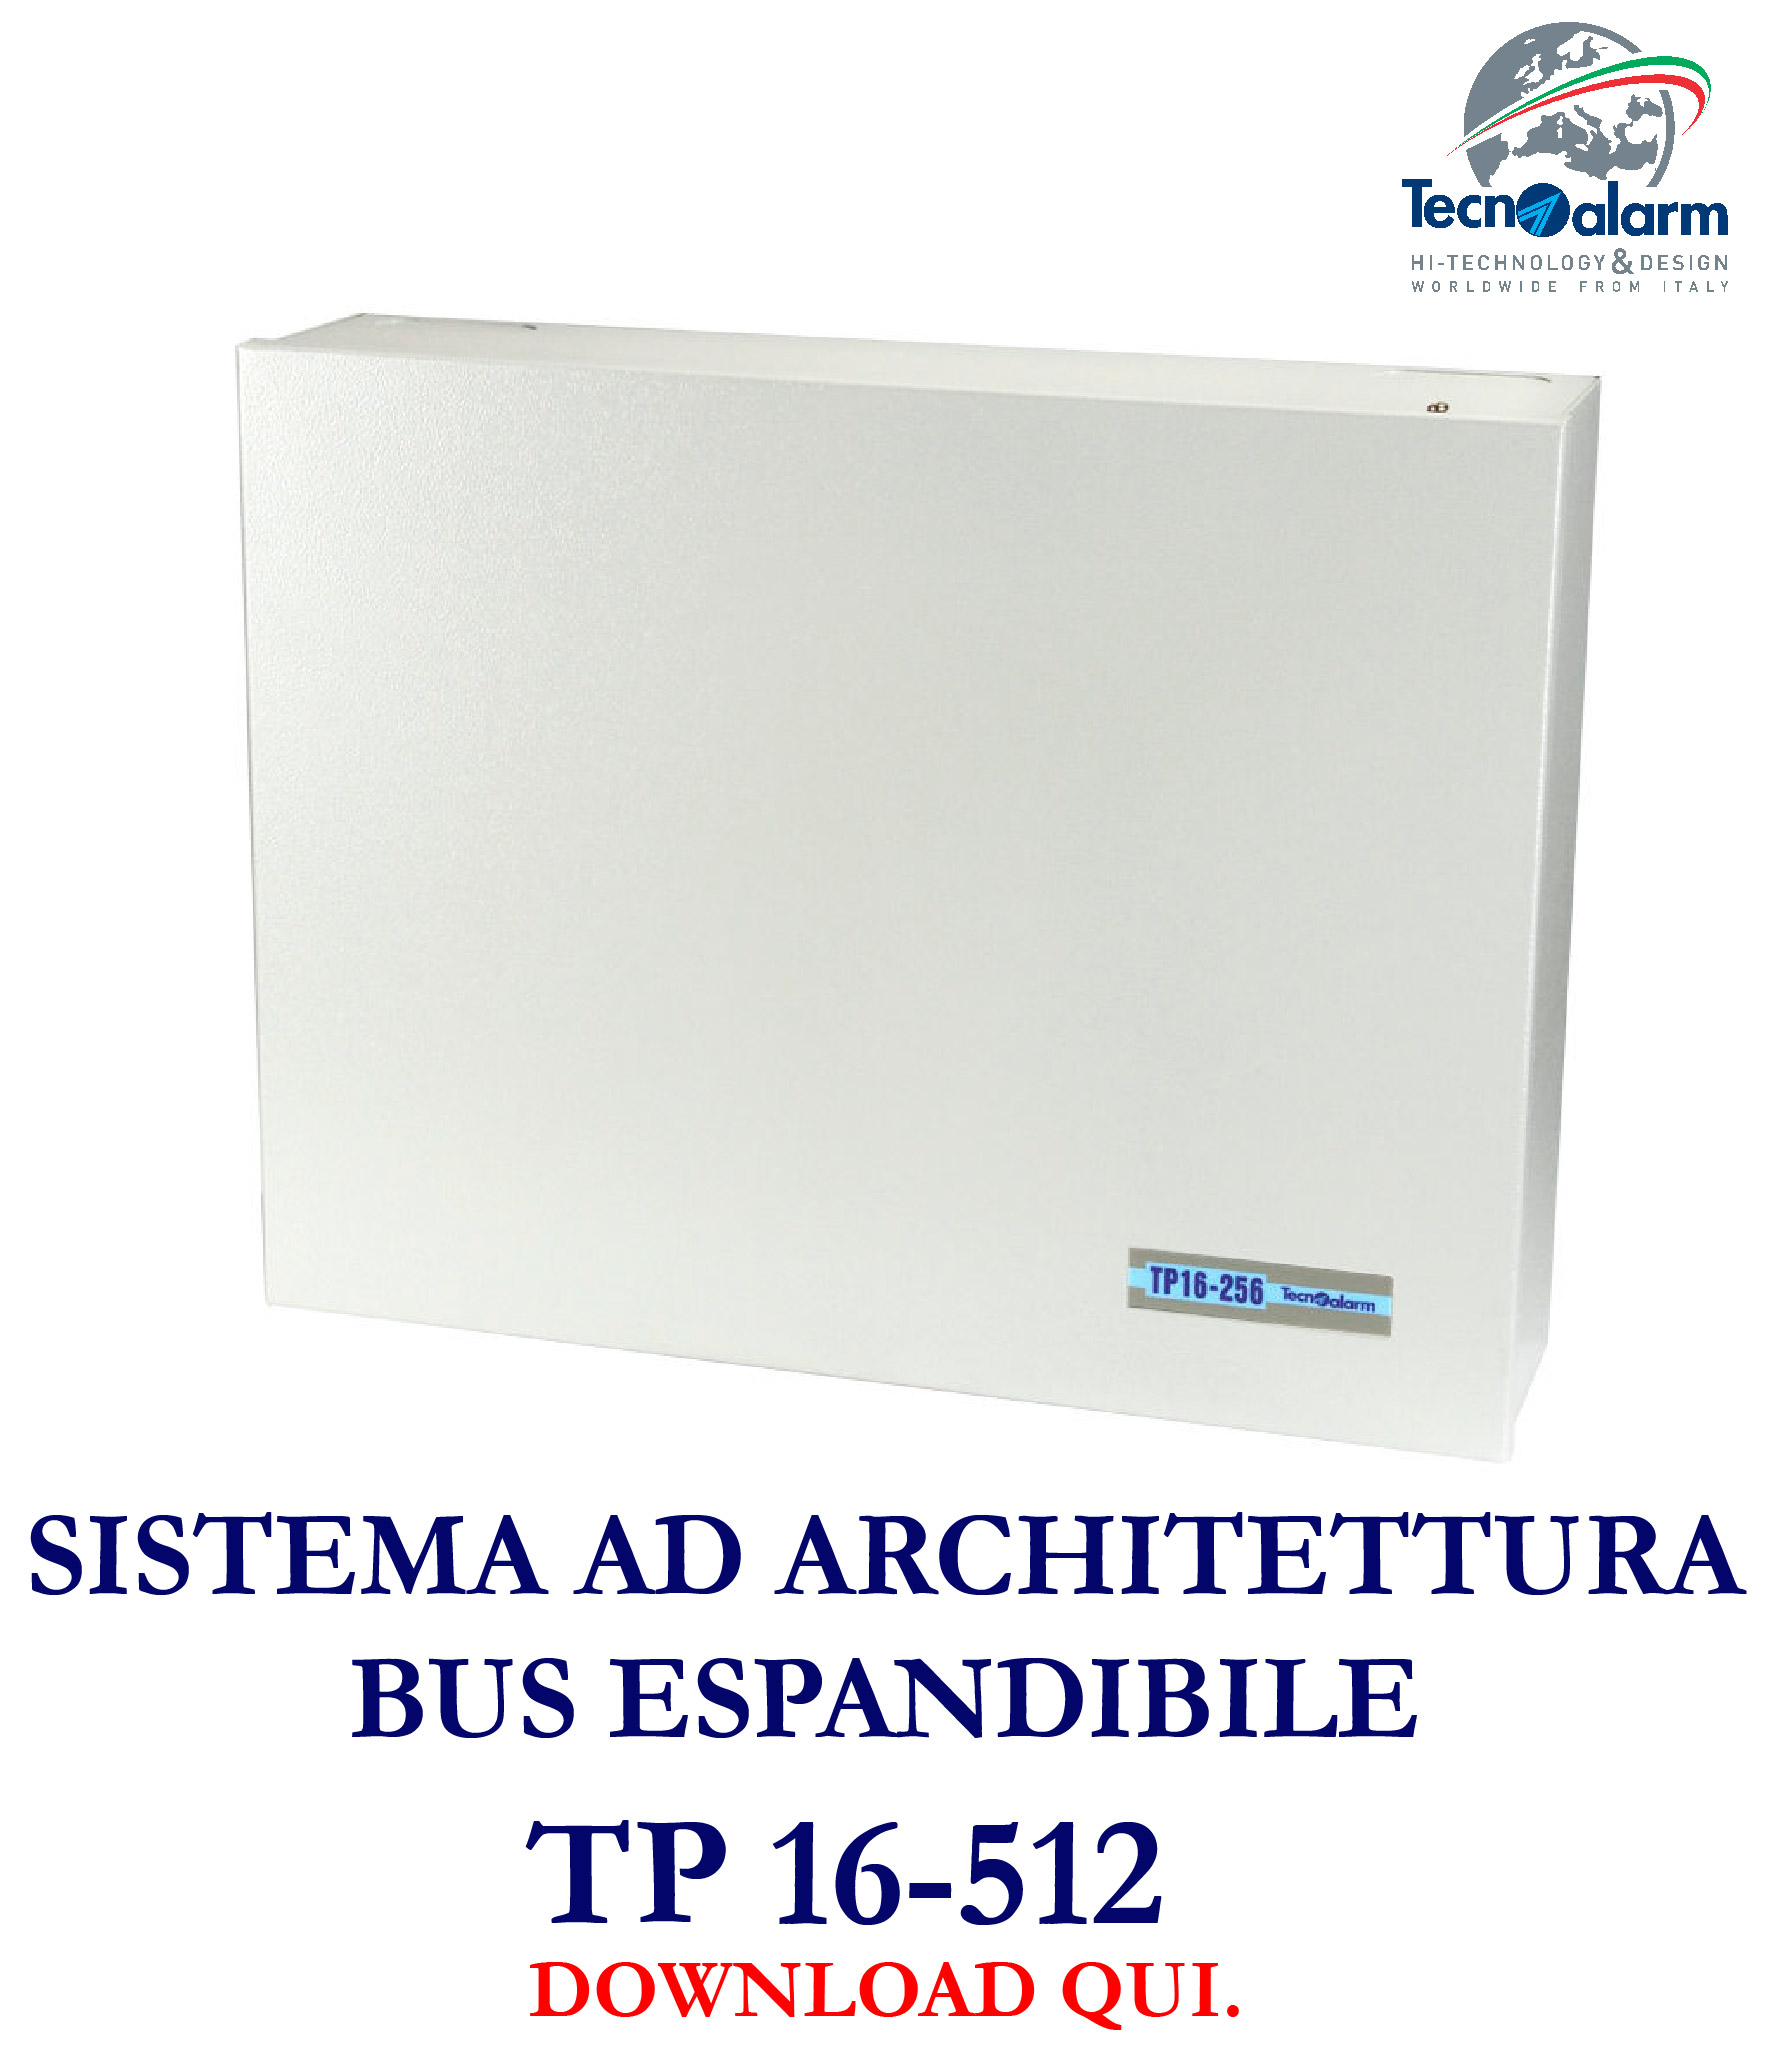 Sistema ad architettura bus espandibile TP 16-512